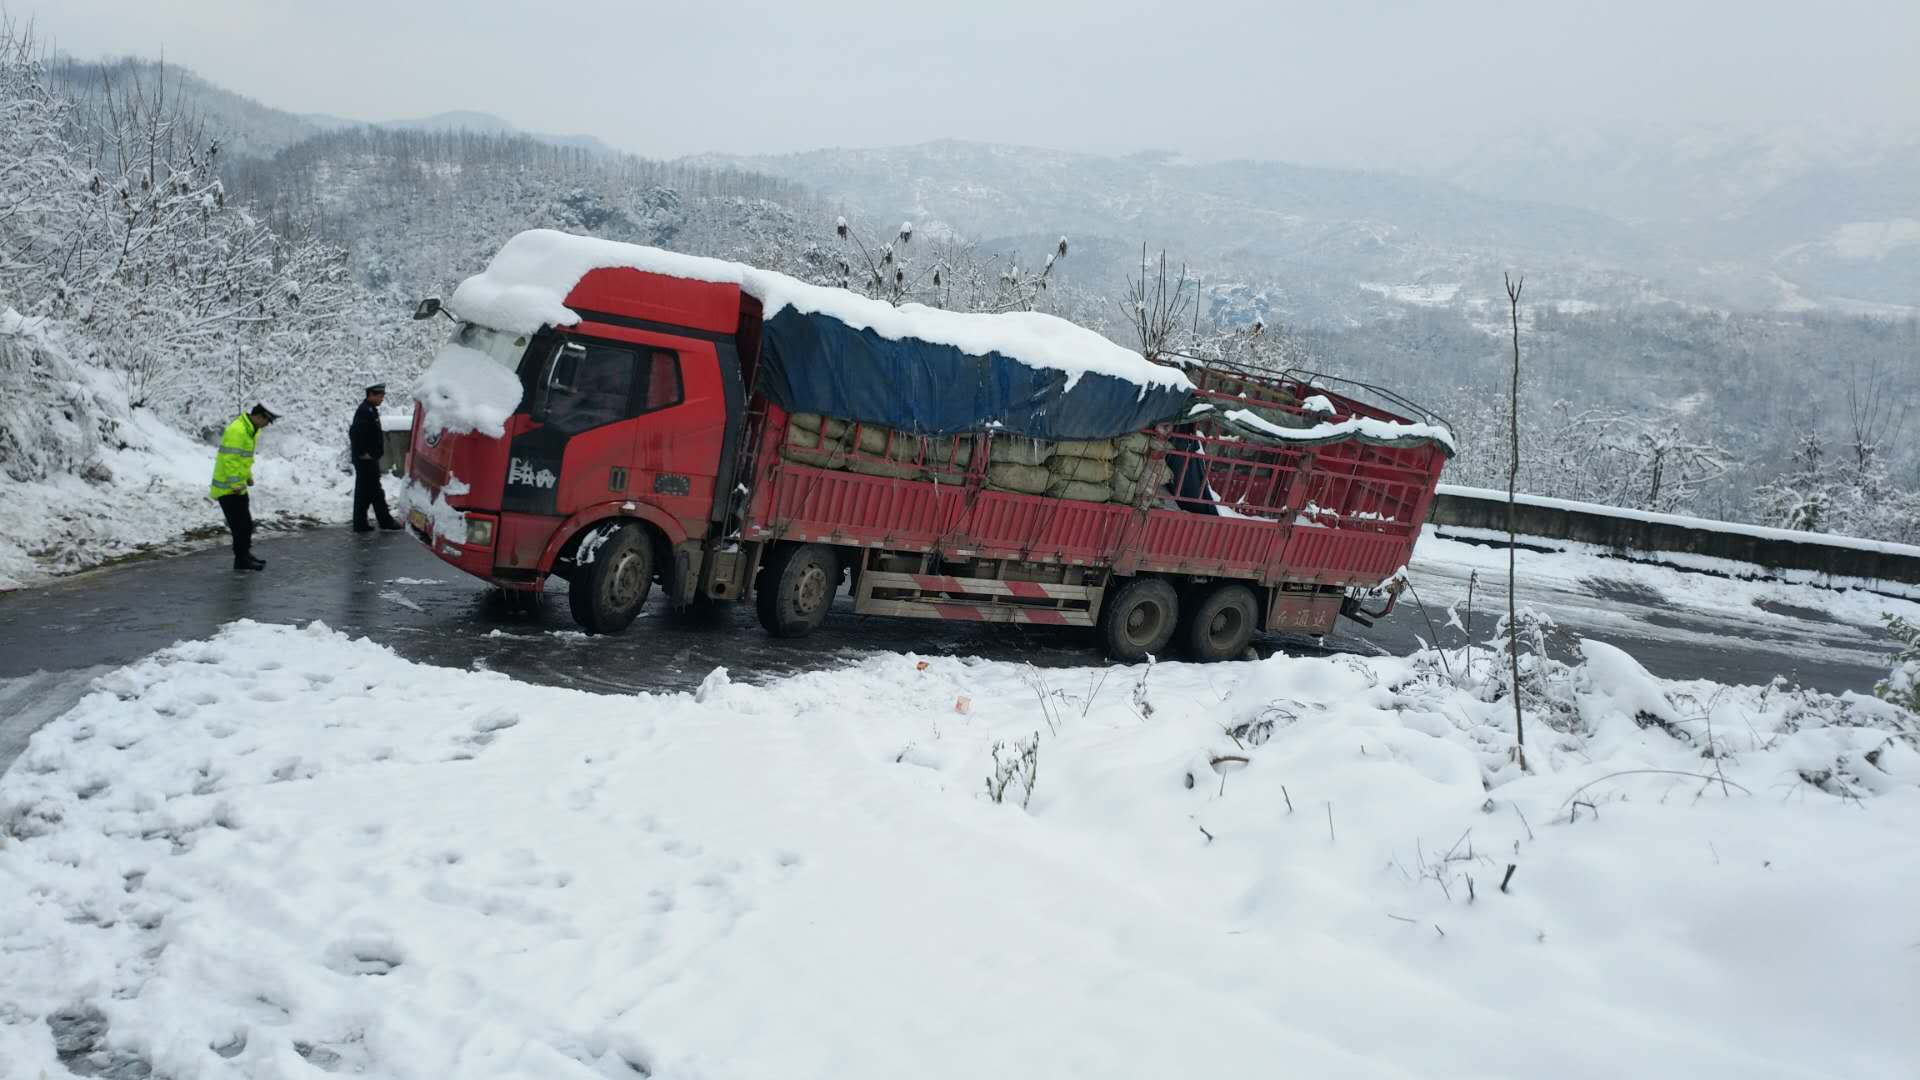 (通讯员张君)一重型货车送货途中,突遇大雪封山,车上河南籍,安徽籍